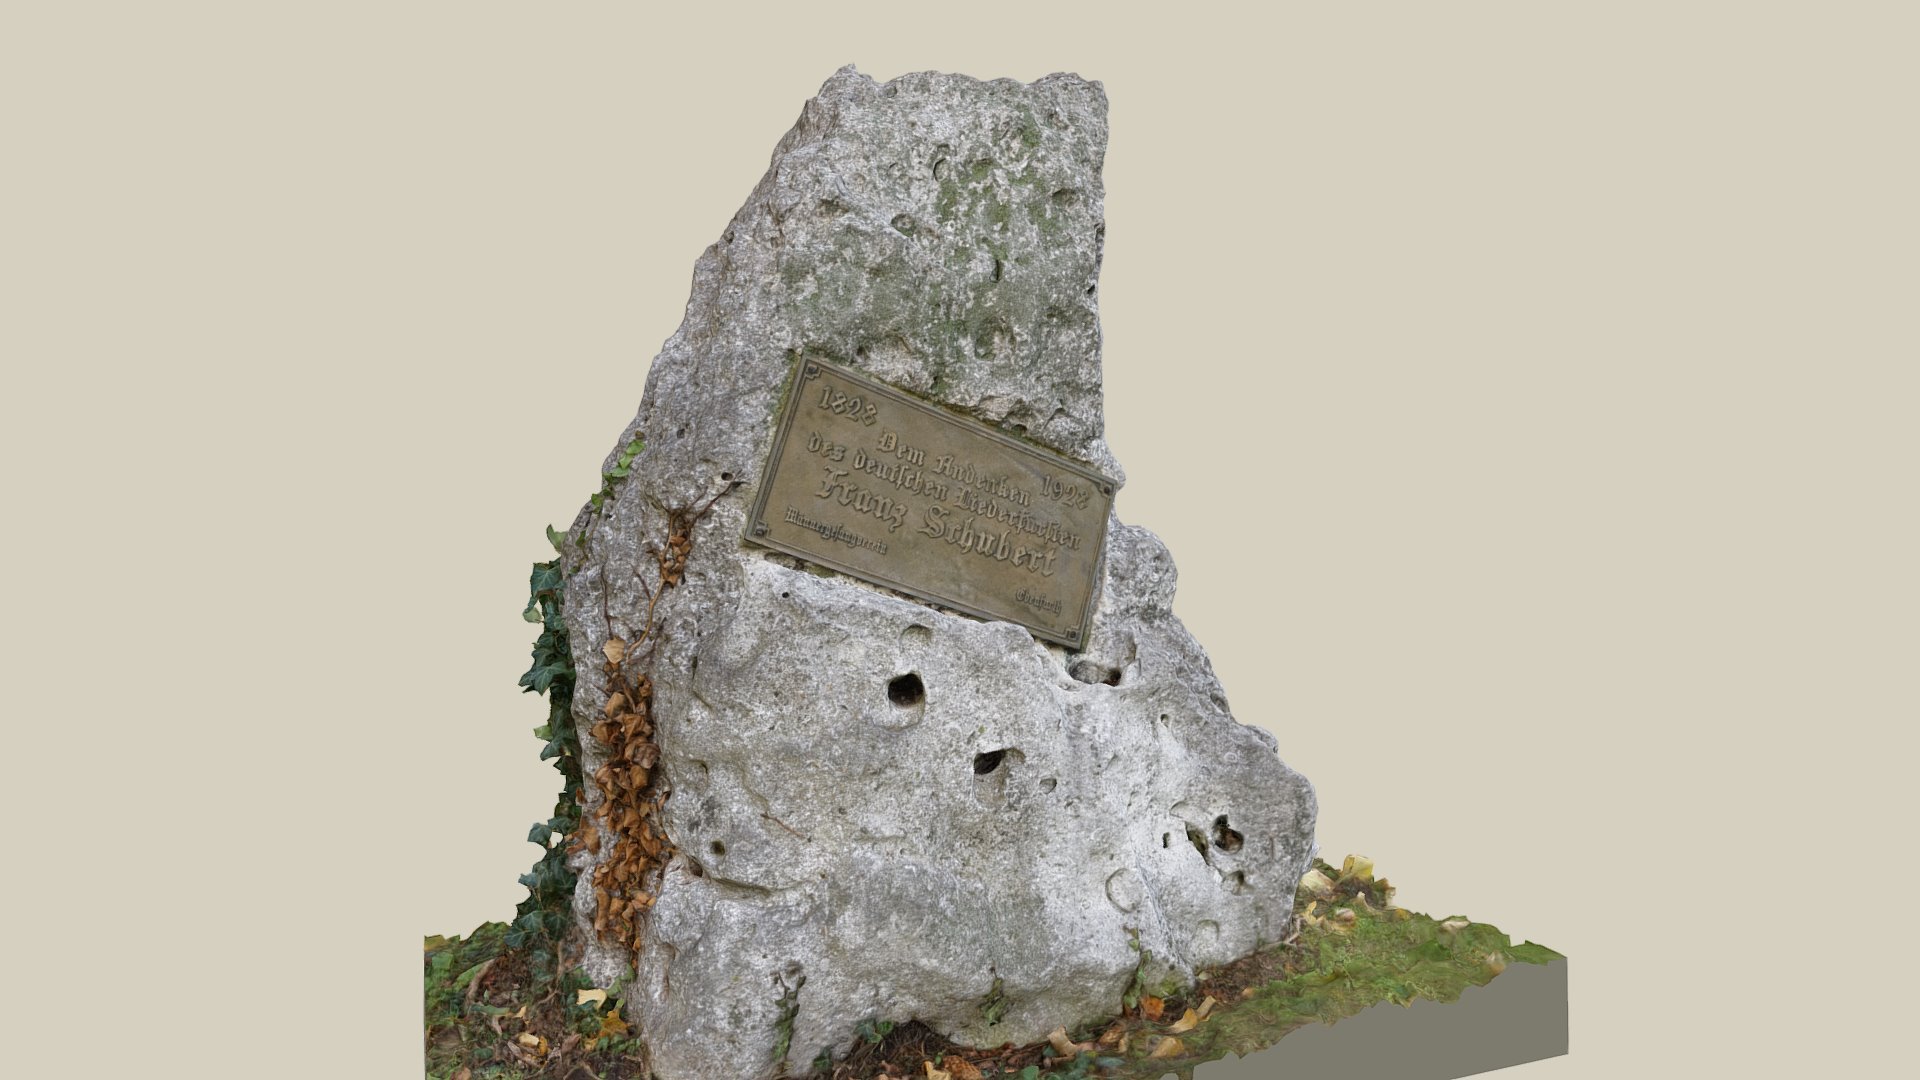 Schubert Gedenkstein